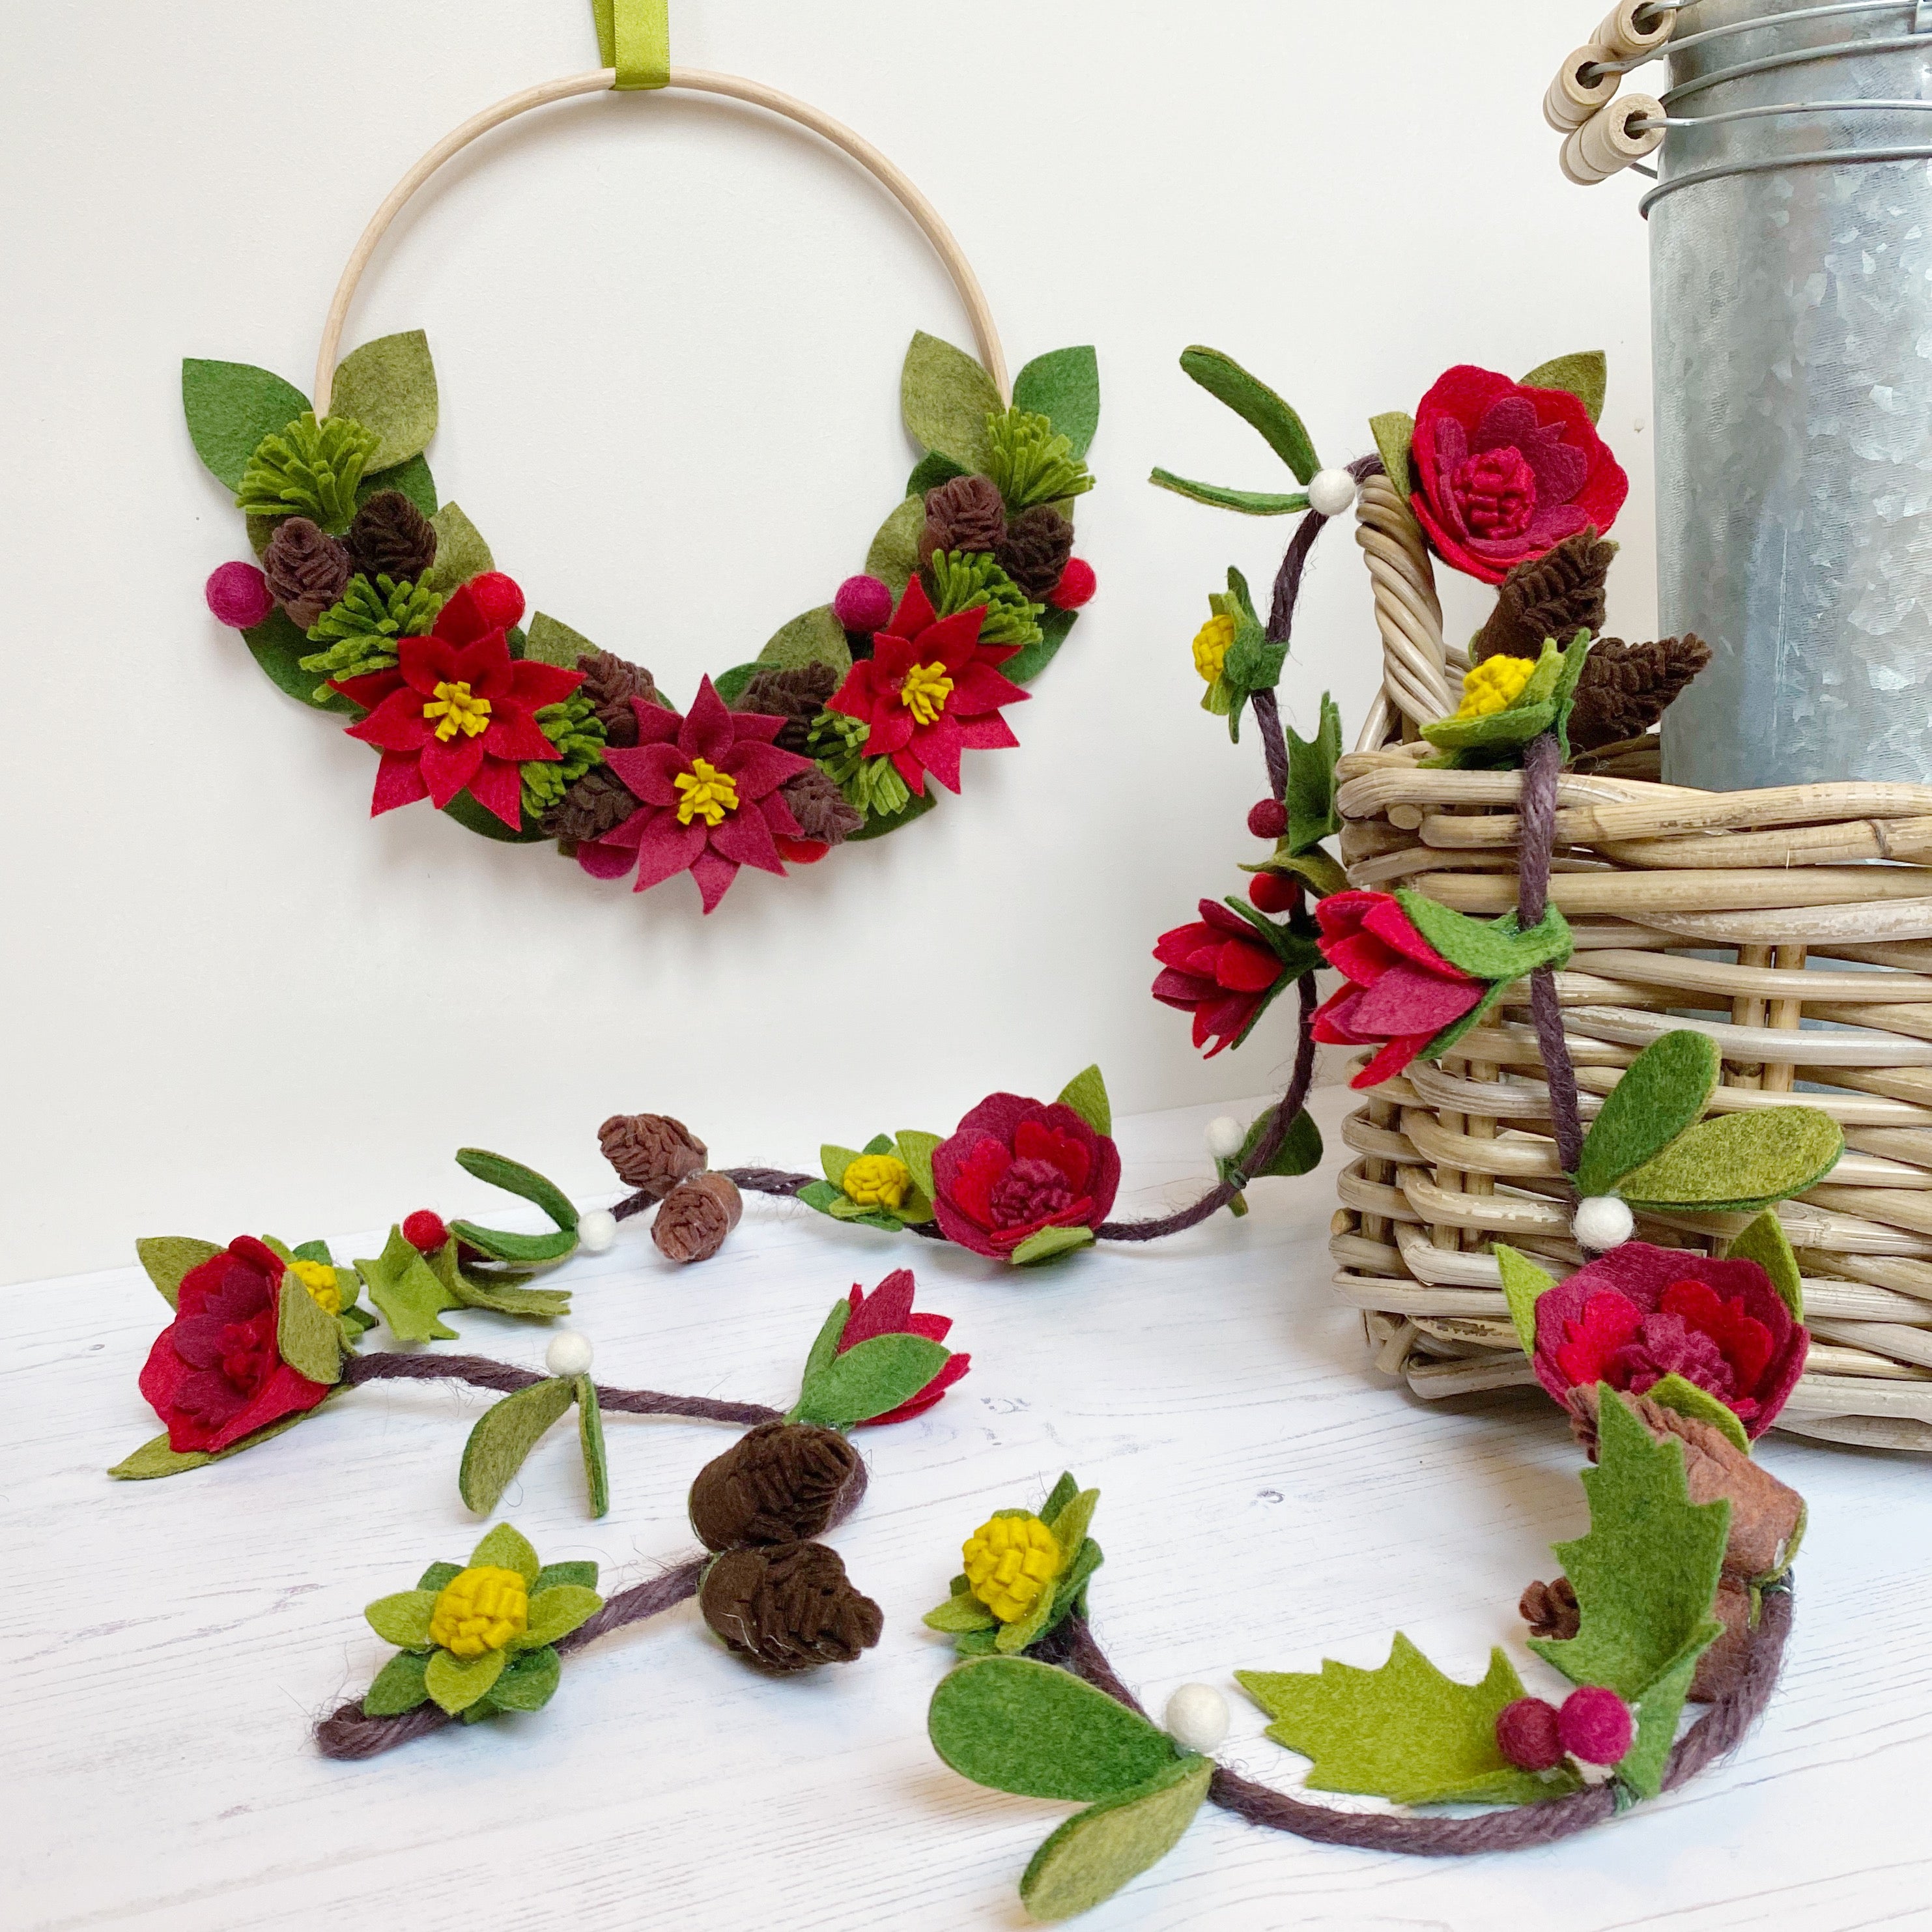 Wool Felt Flowers - Victorian Christmas Flowers - 19 Flowers & 24 leaves -  DIY Christmas Wreaths, Garlands, Headbands